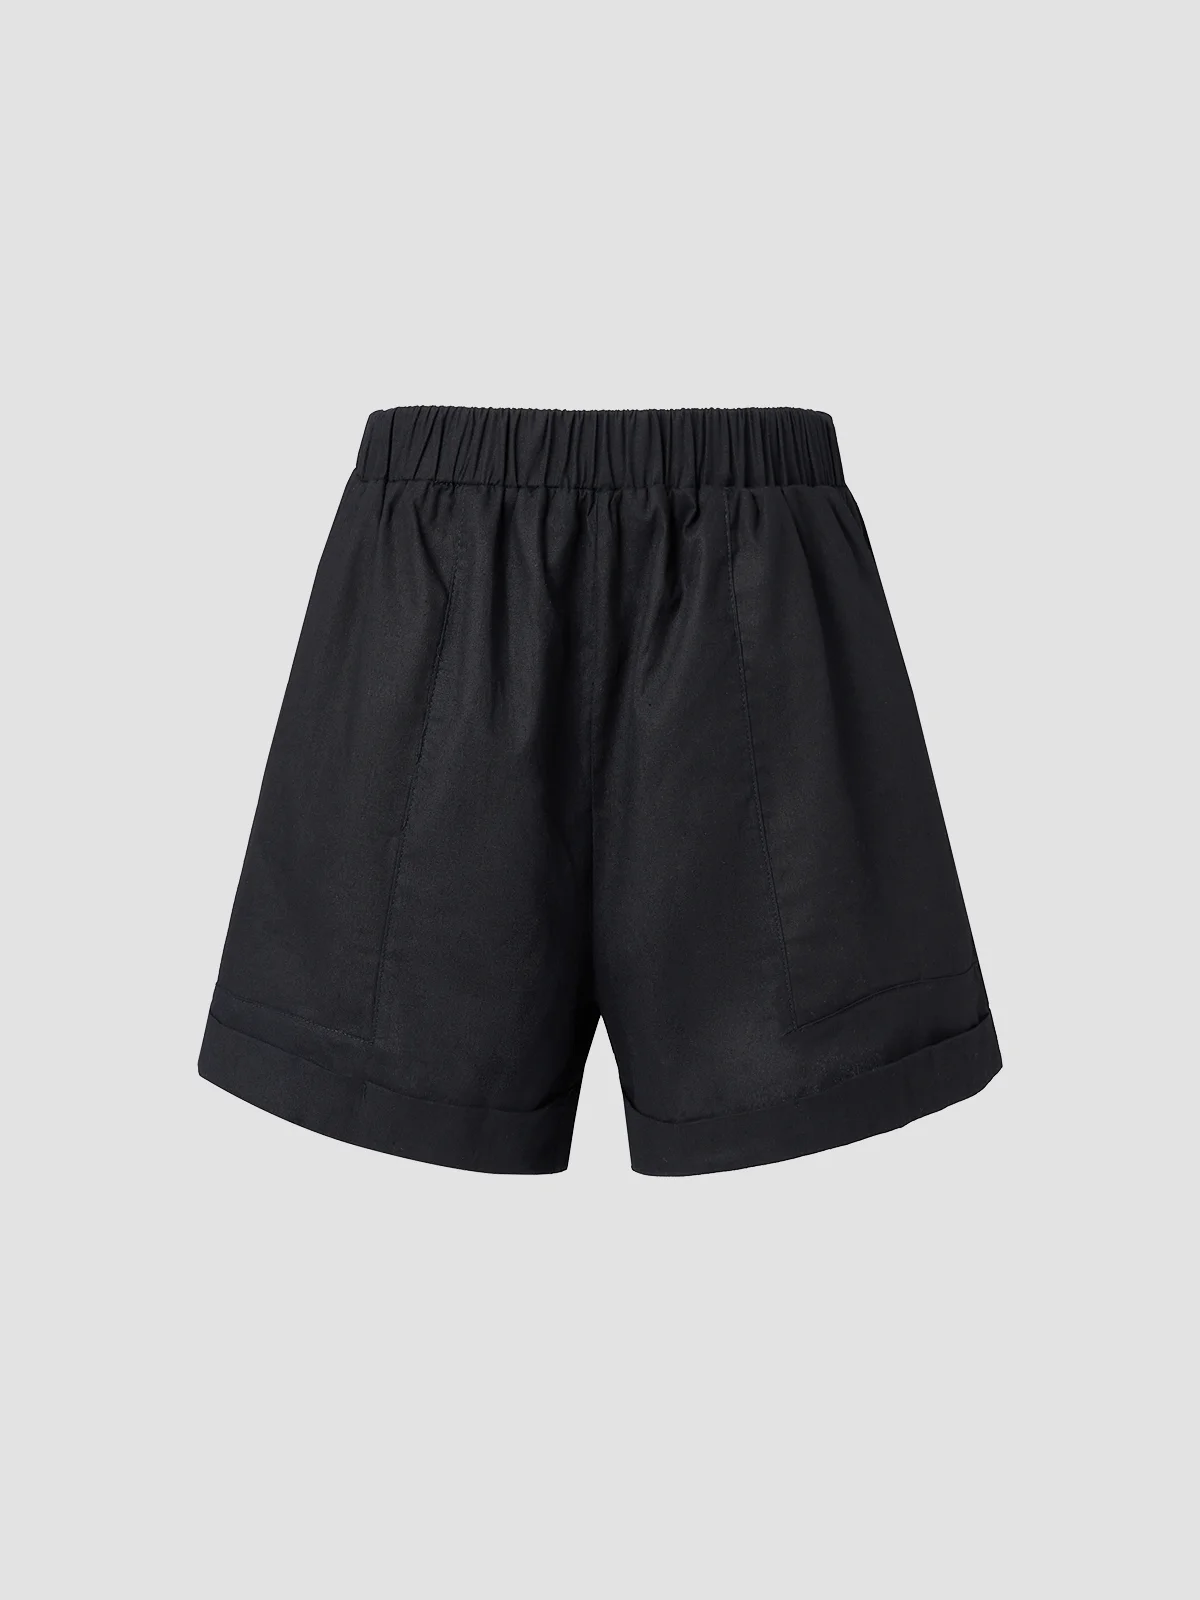 Holiday Plain Casual Short Shorts